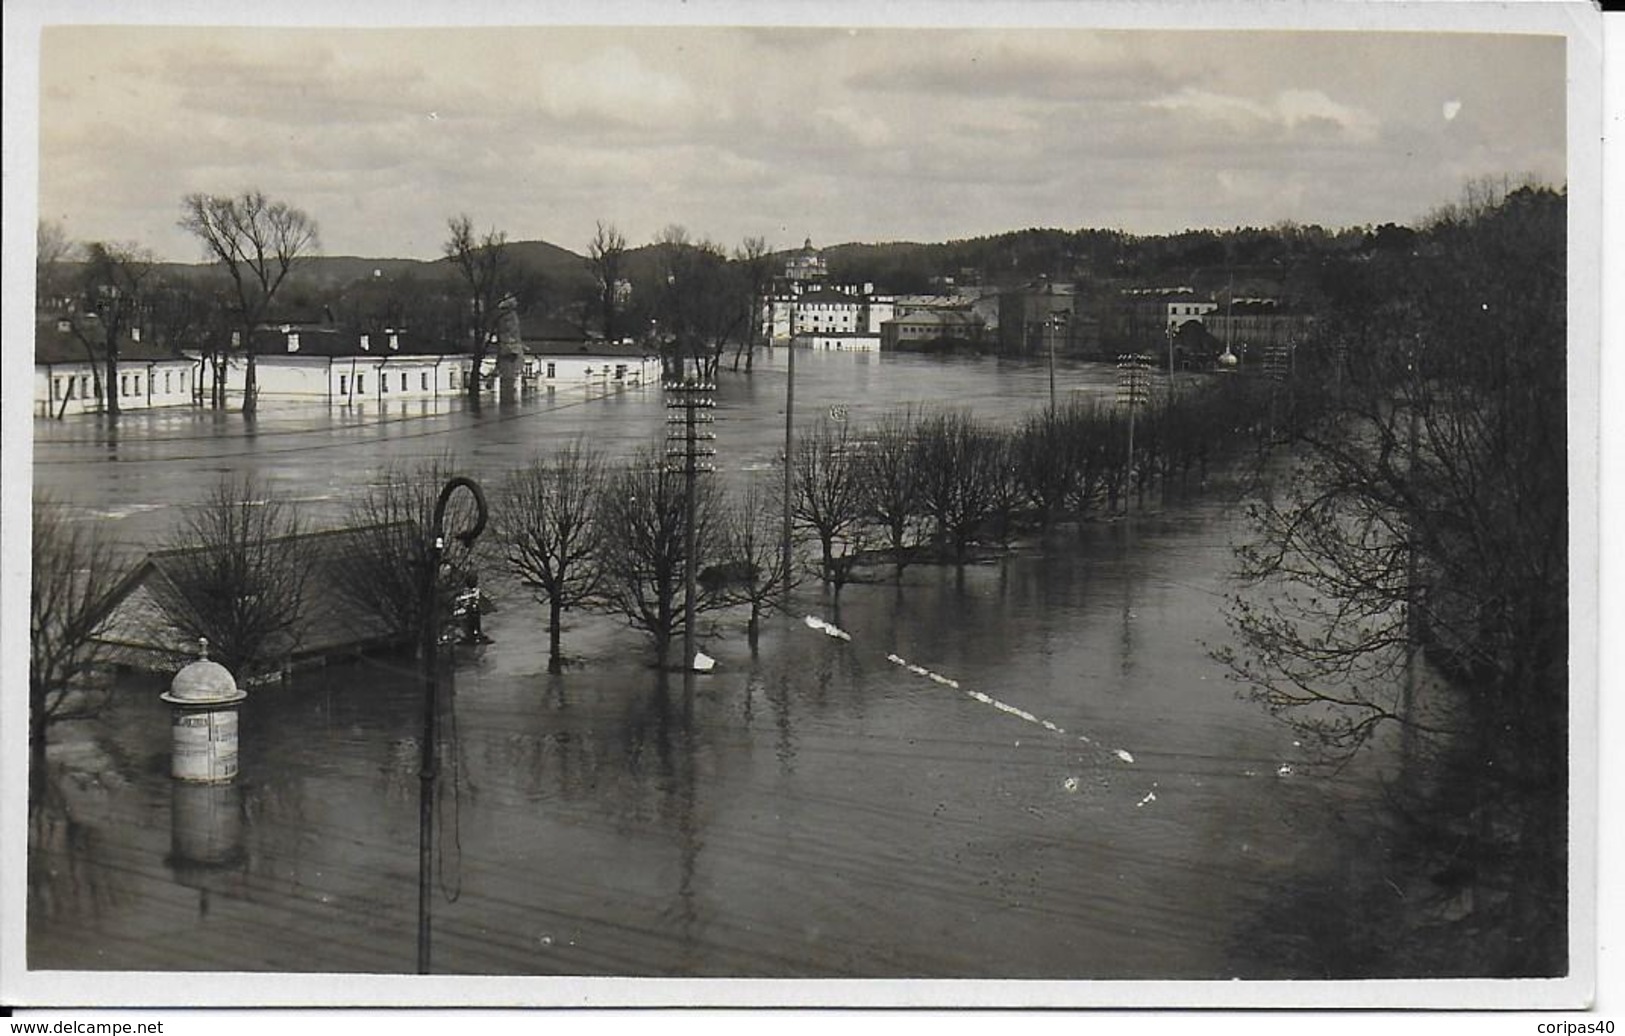 Photo Cpa -Inondation Wilno- Art: J.Lozinski - Pologne